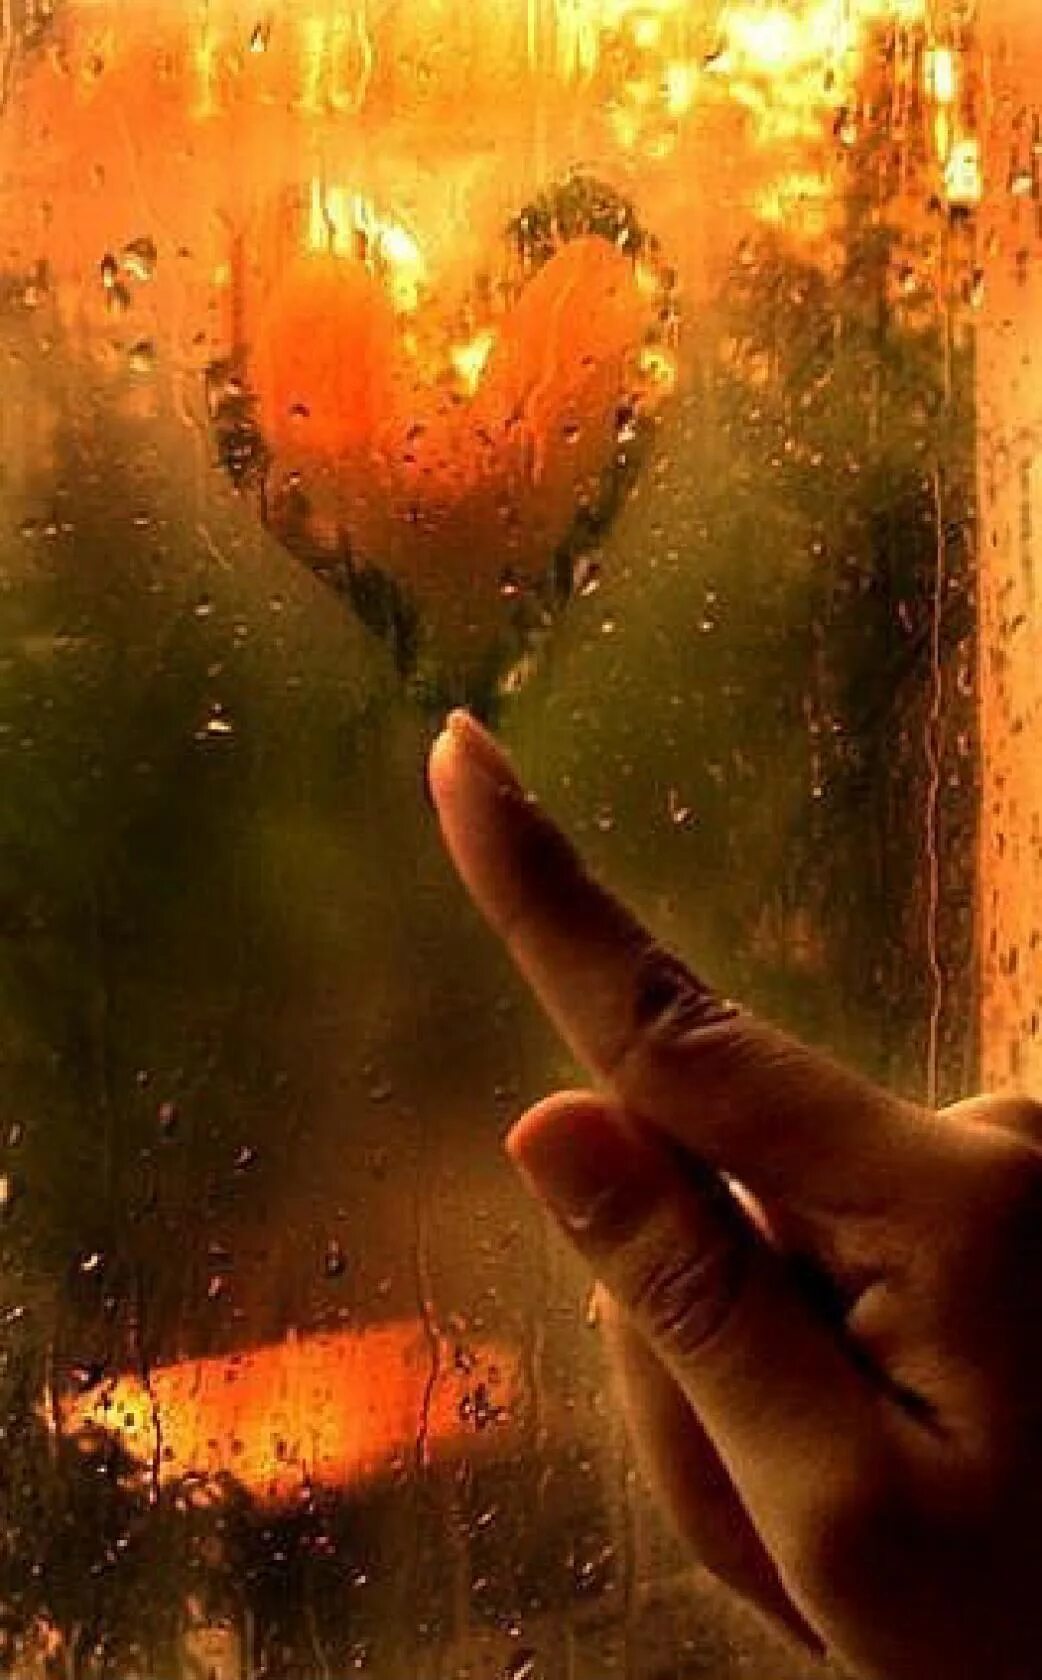 Сердце на стекле. Ладонь на стекле. Сердечко на окне в дождь. Сердечко на мокром окне. В душе тепло и солнечно